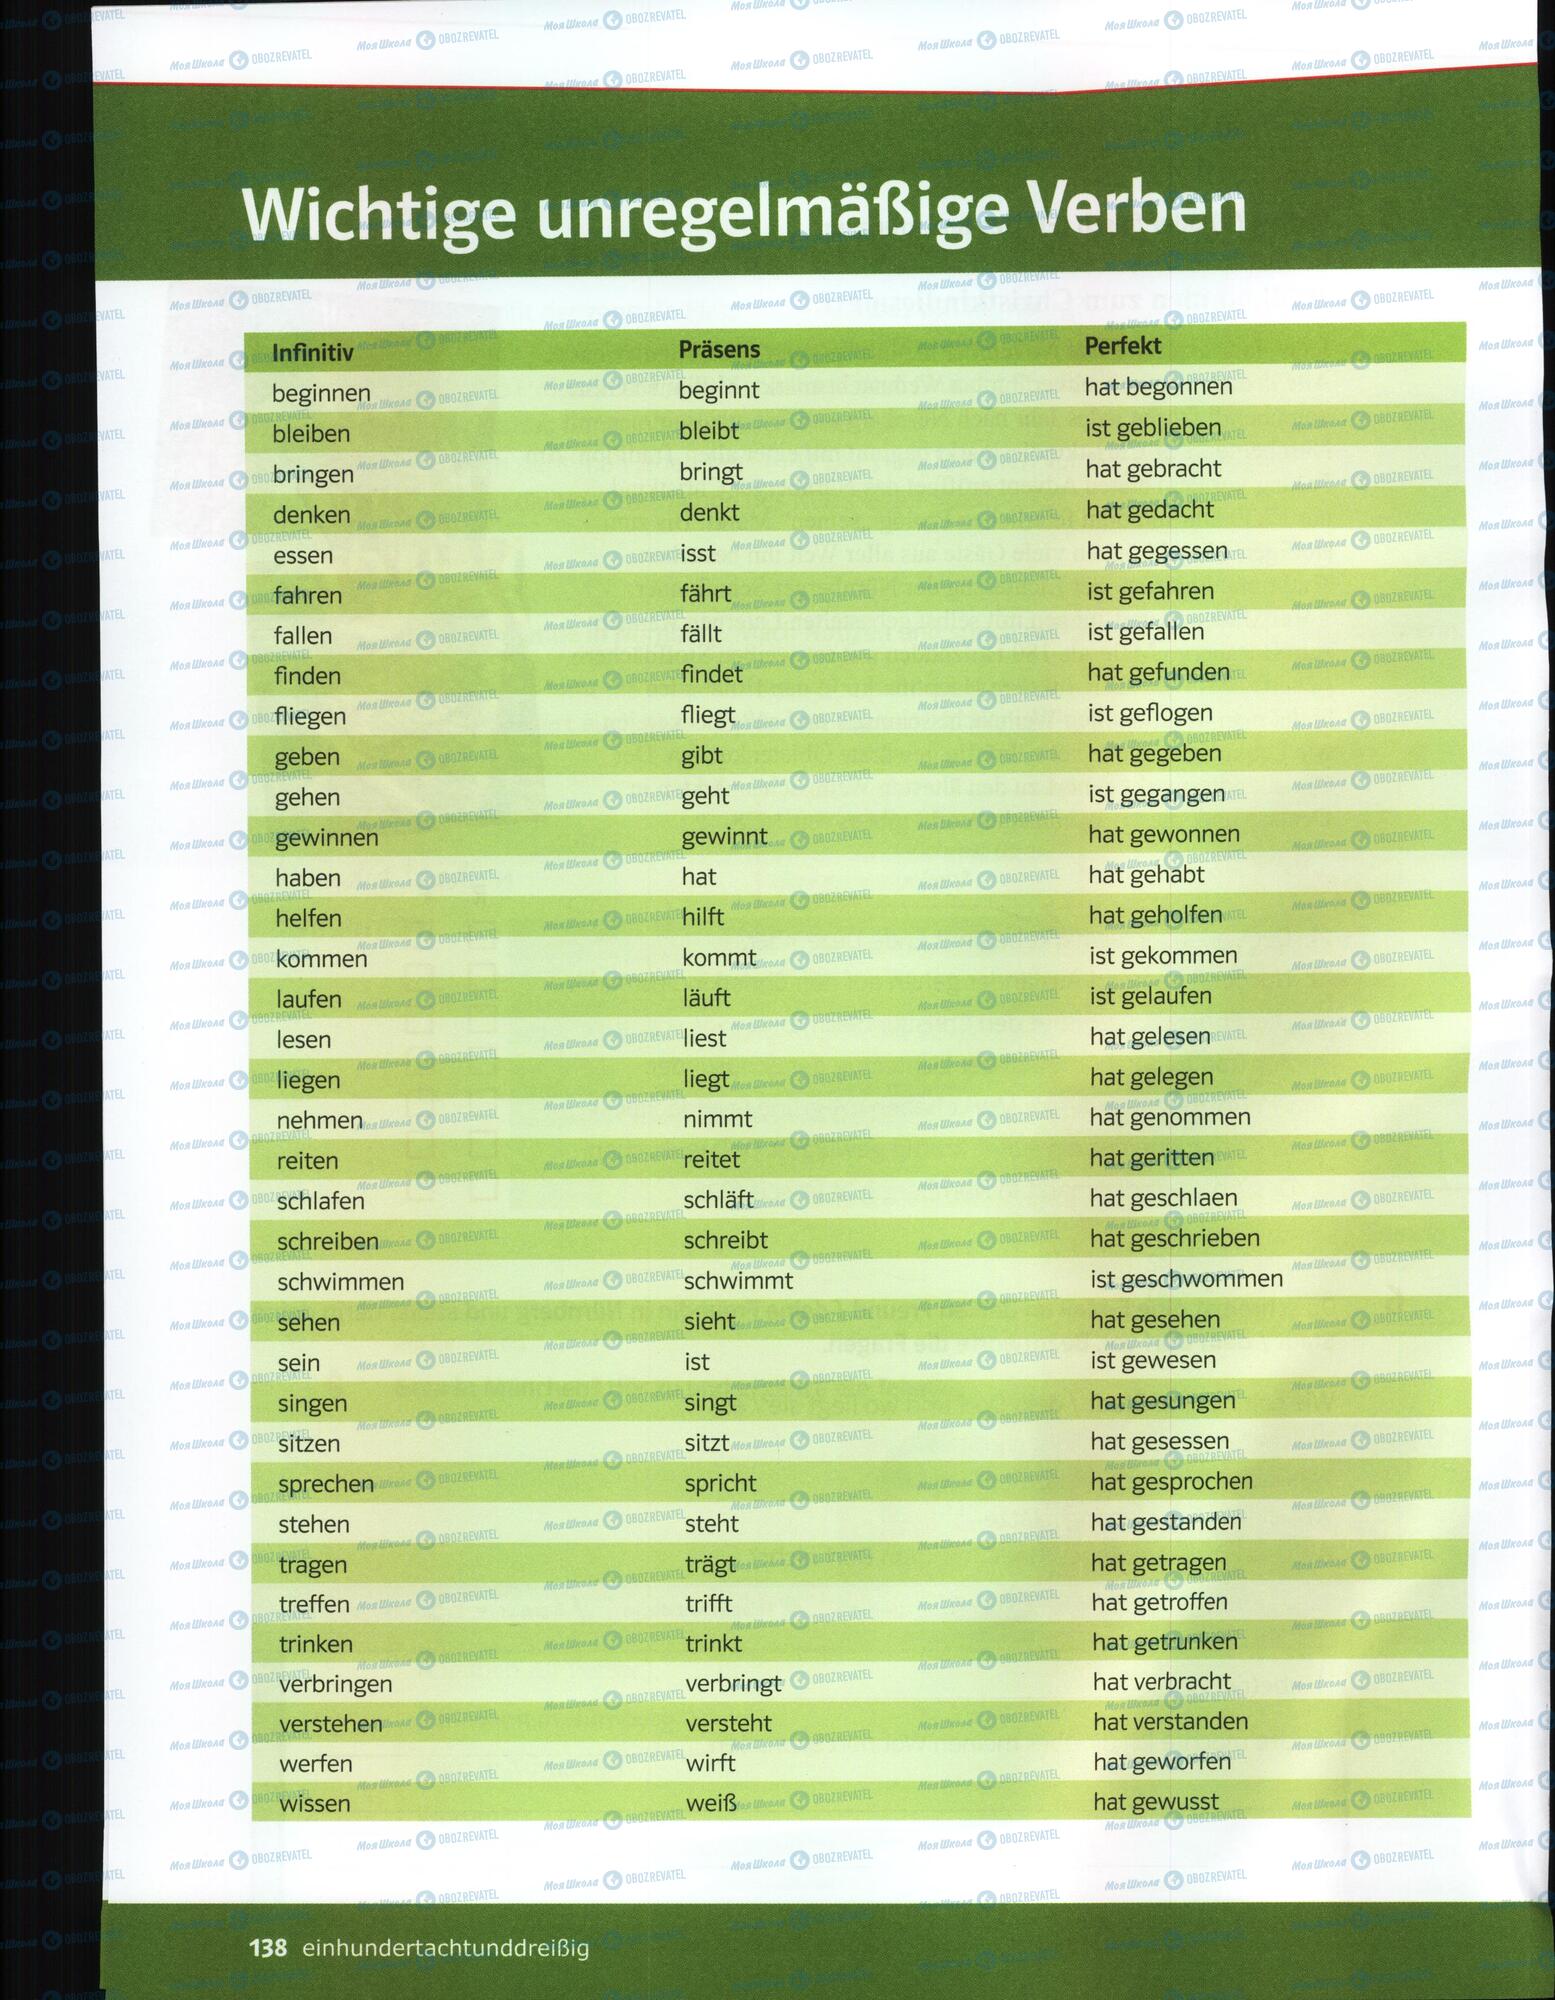 Підручники Німецька мова 6 клас сторінка 136